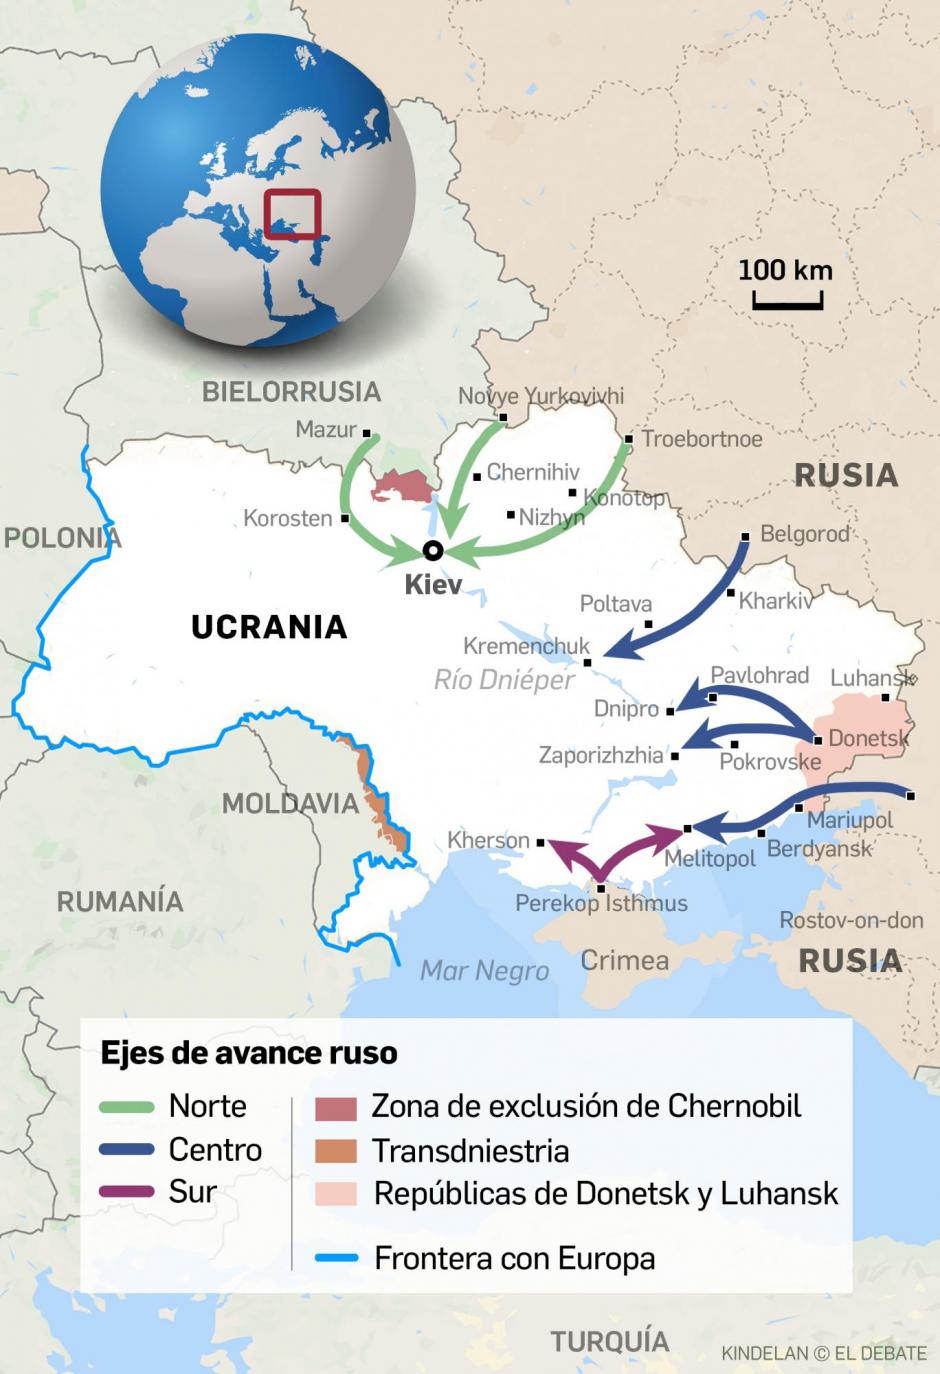 Posibles rutas de invasión de las tropas rusas a Ucrania